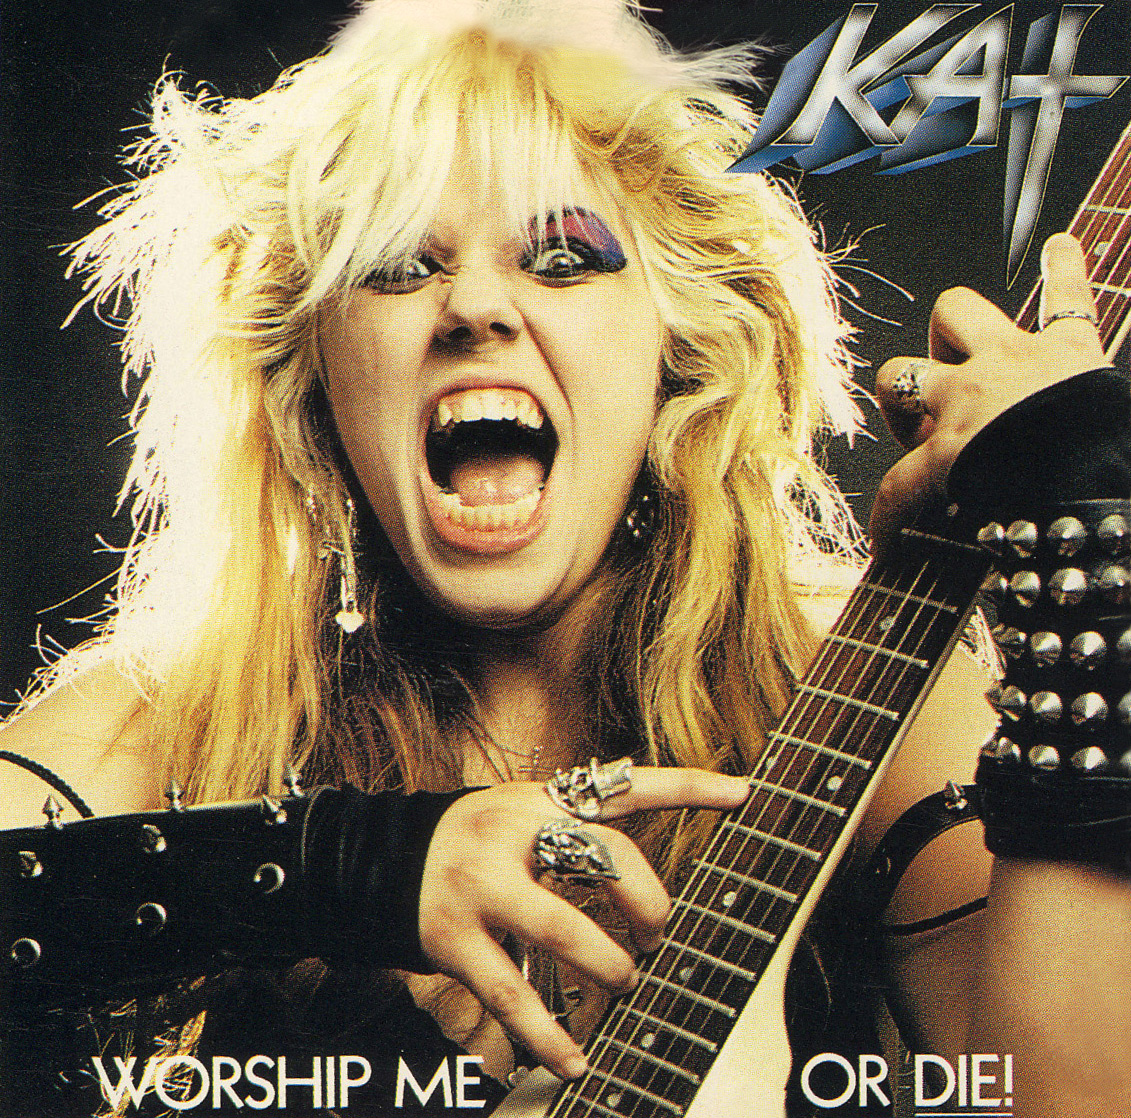 The Great Kat "WORSHIP ME OR DIE!" CD Photo